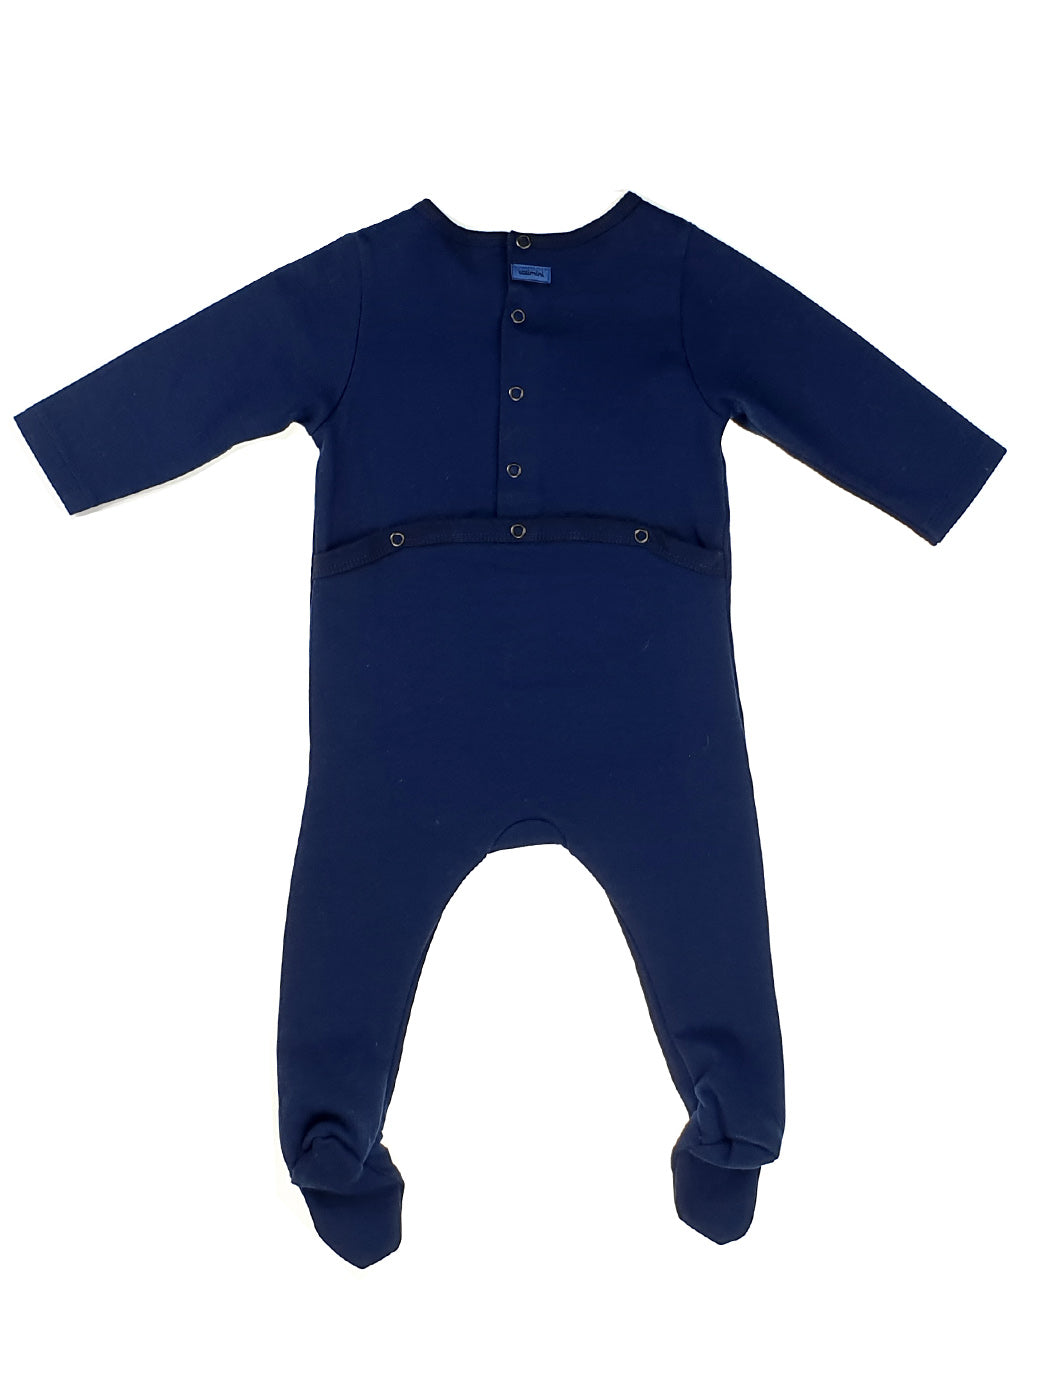 Baby cotton playsuit- CK54060-Blue